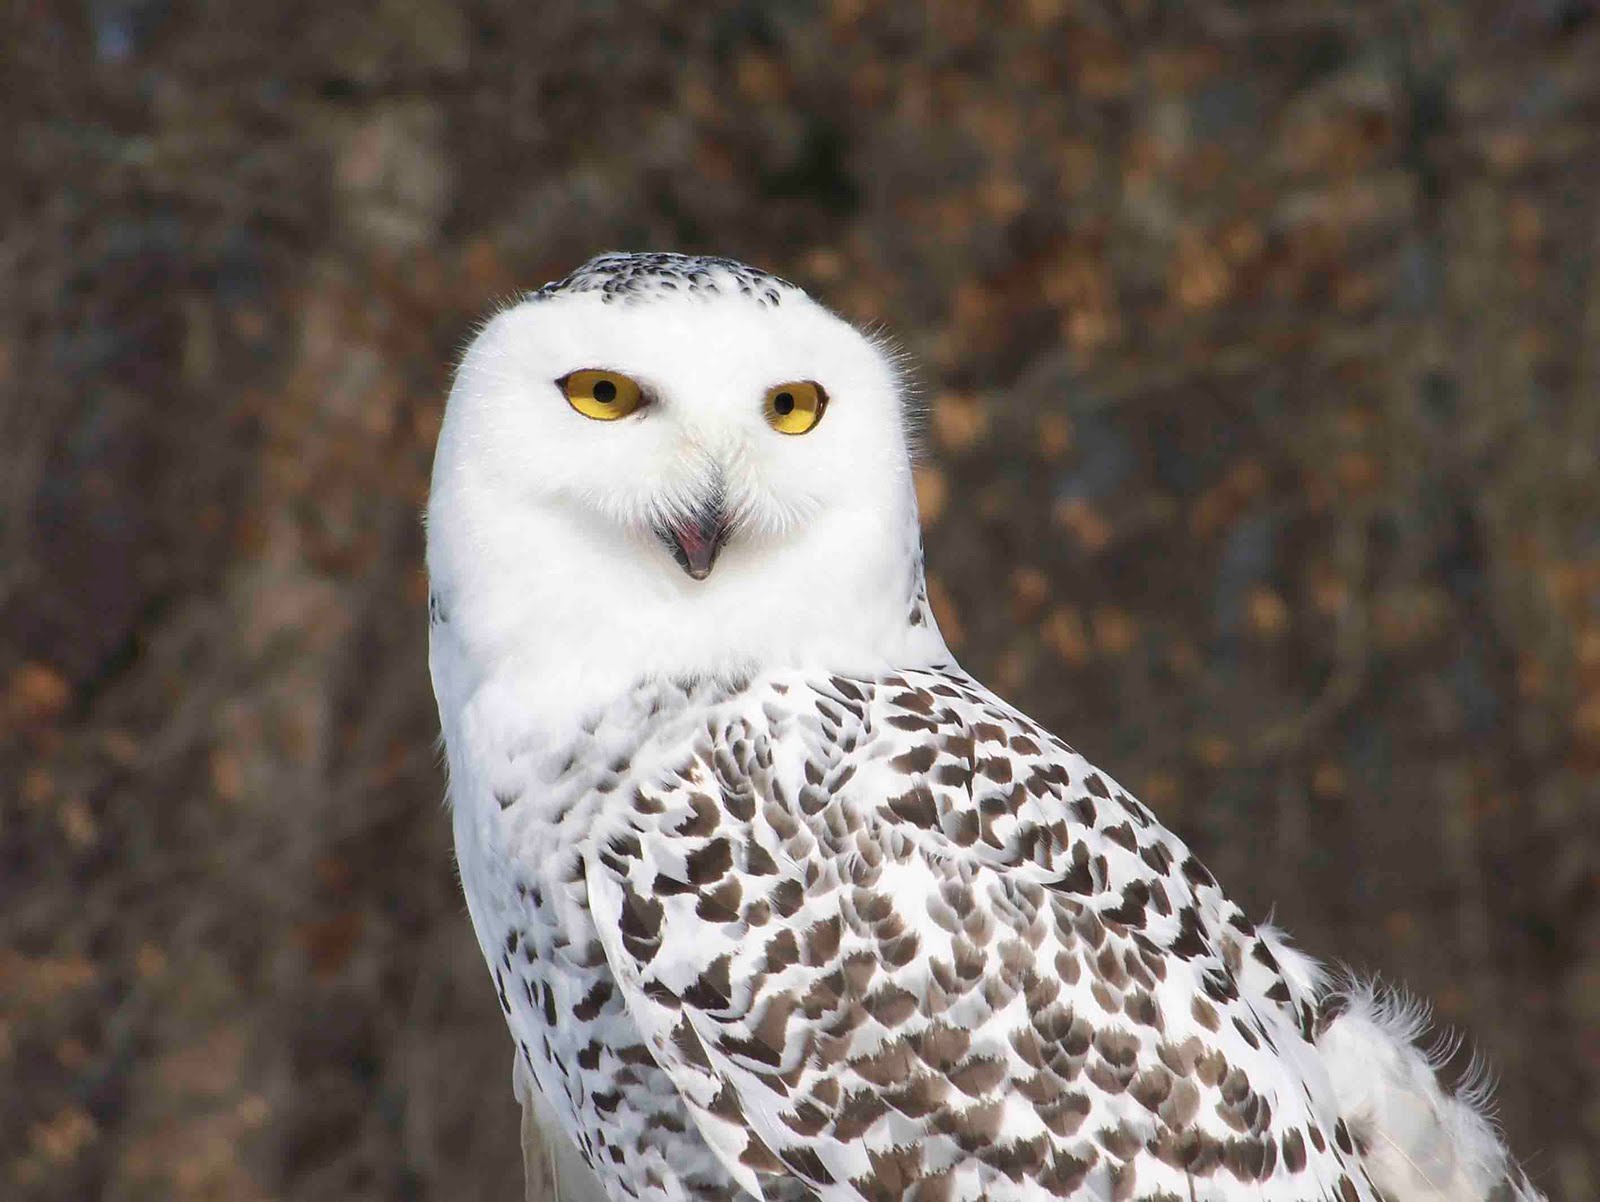 Iron Oak Farm: Wild Wednesday, Snowy Owl